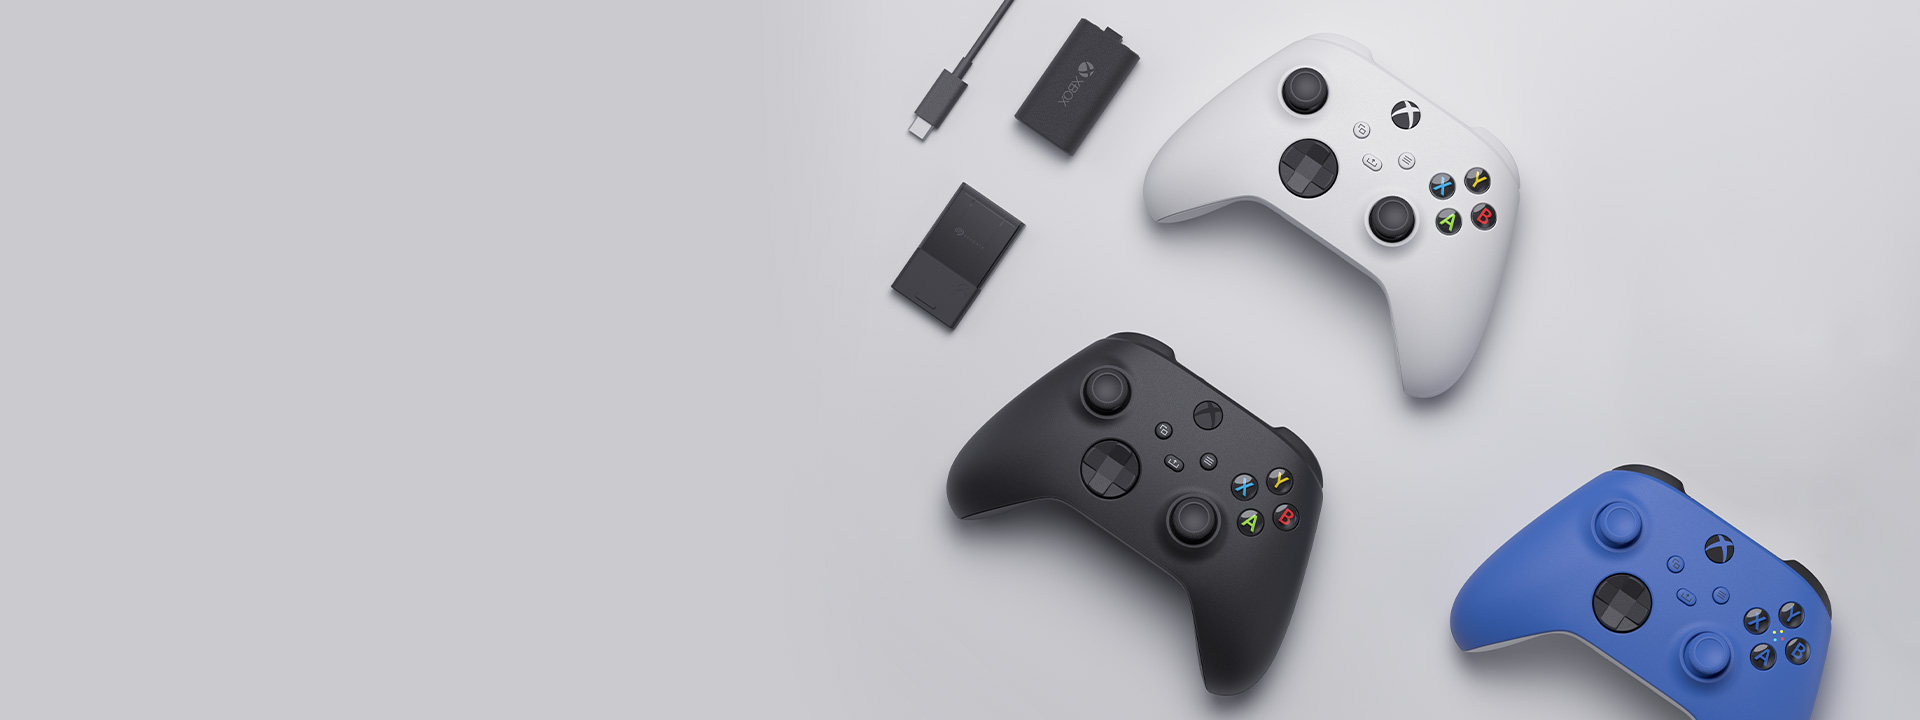 Vários acessórios Xbox, incluindo o Comando Sem Fios Xbox, o kit Play and Charge e o Cartão de Expansão de Armazenamento da Seagate para a Xbox Series X|S estão dispostos uns ao lado dos outros.